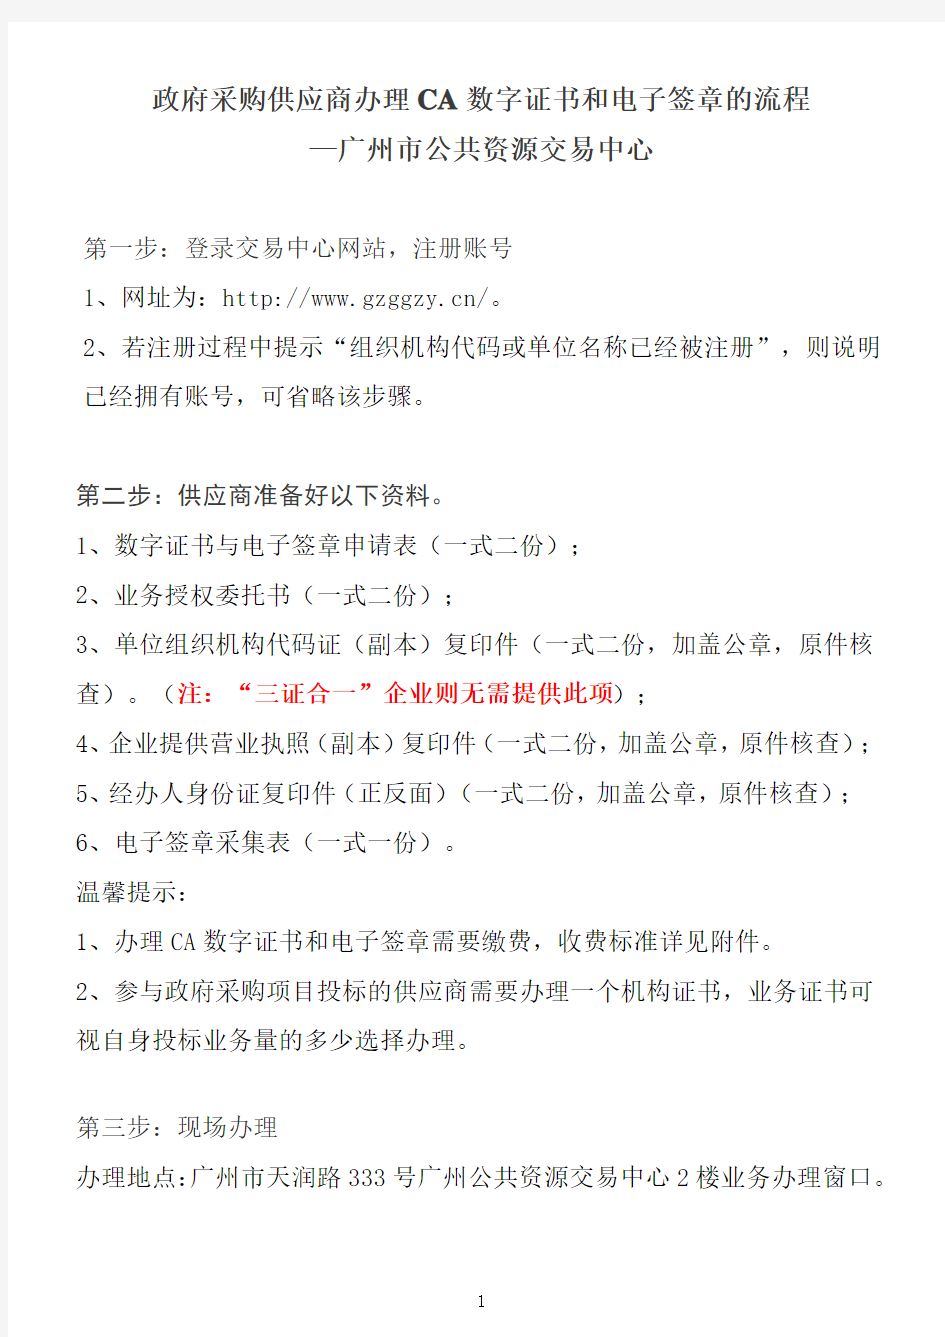 广州市公共资源交易中心政府采购供应商办理CA数字证书和电子签章的流程